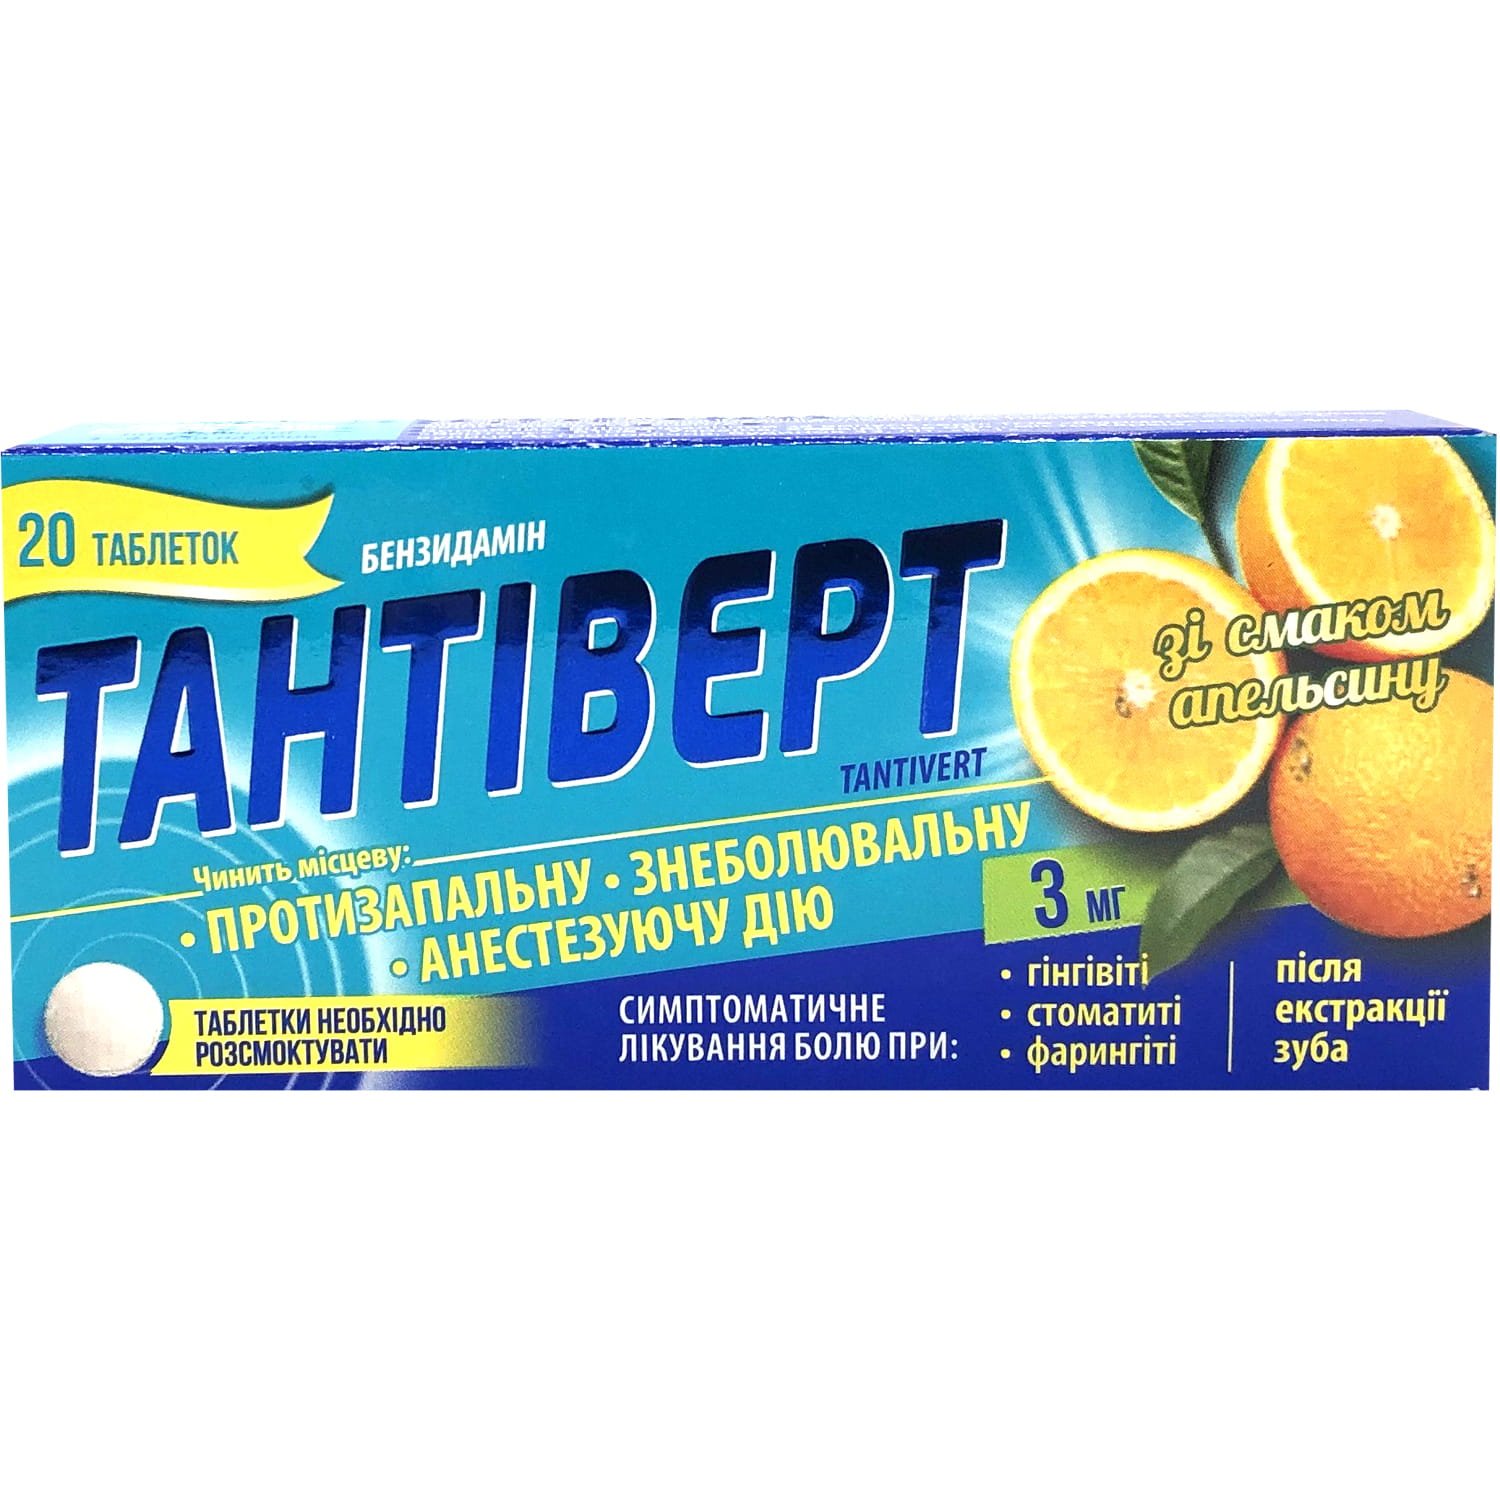 Тантіверт таблетки зі смаком апельсину, 20 шт.: інструкція, ціна .